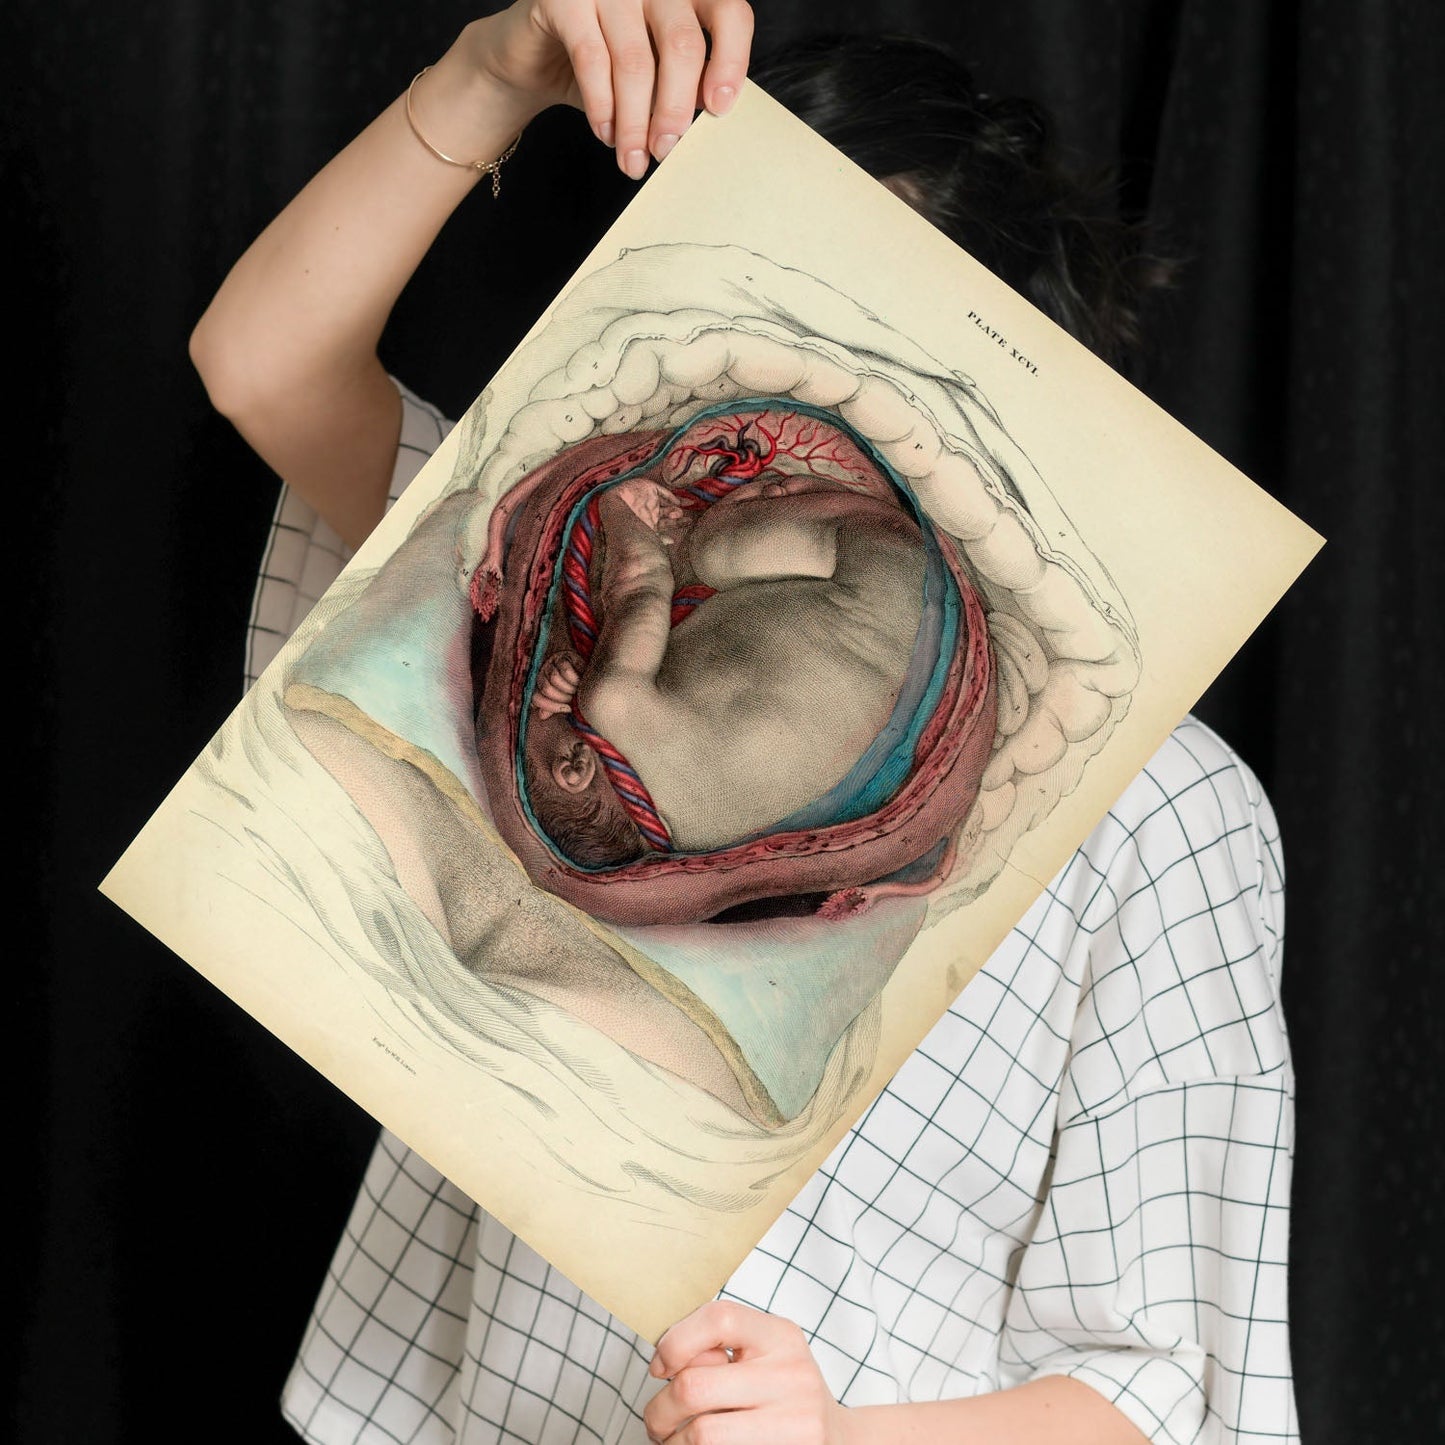 Gravid uterus with fetus-Artwork-Nacnic-Nacnic Estudio SL